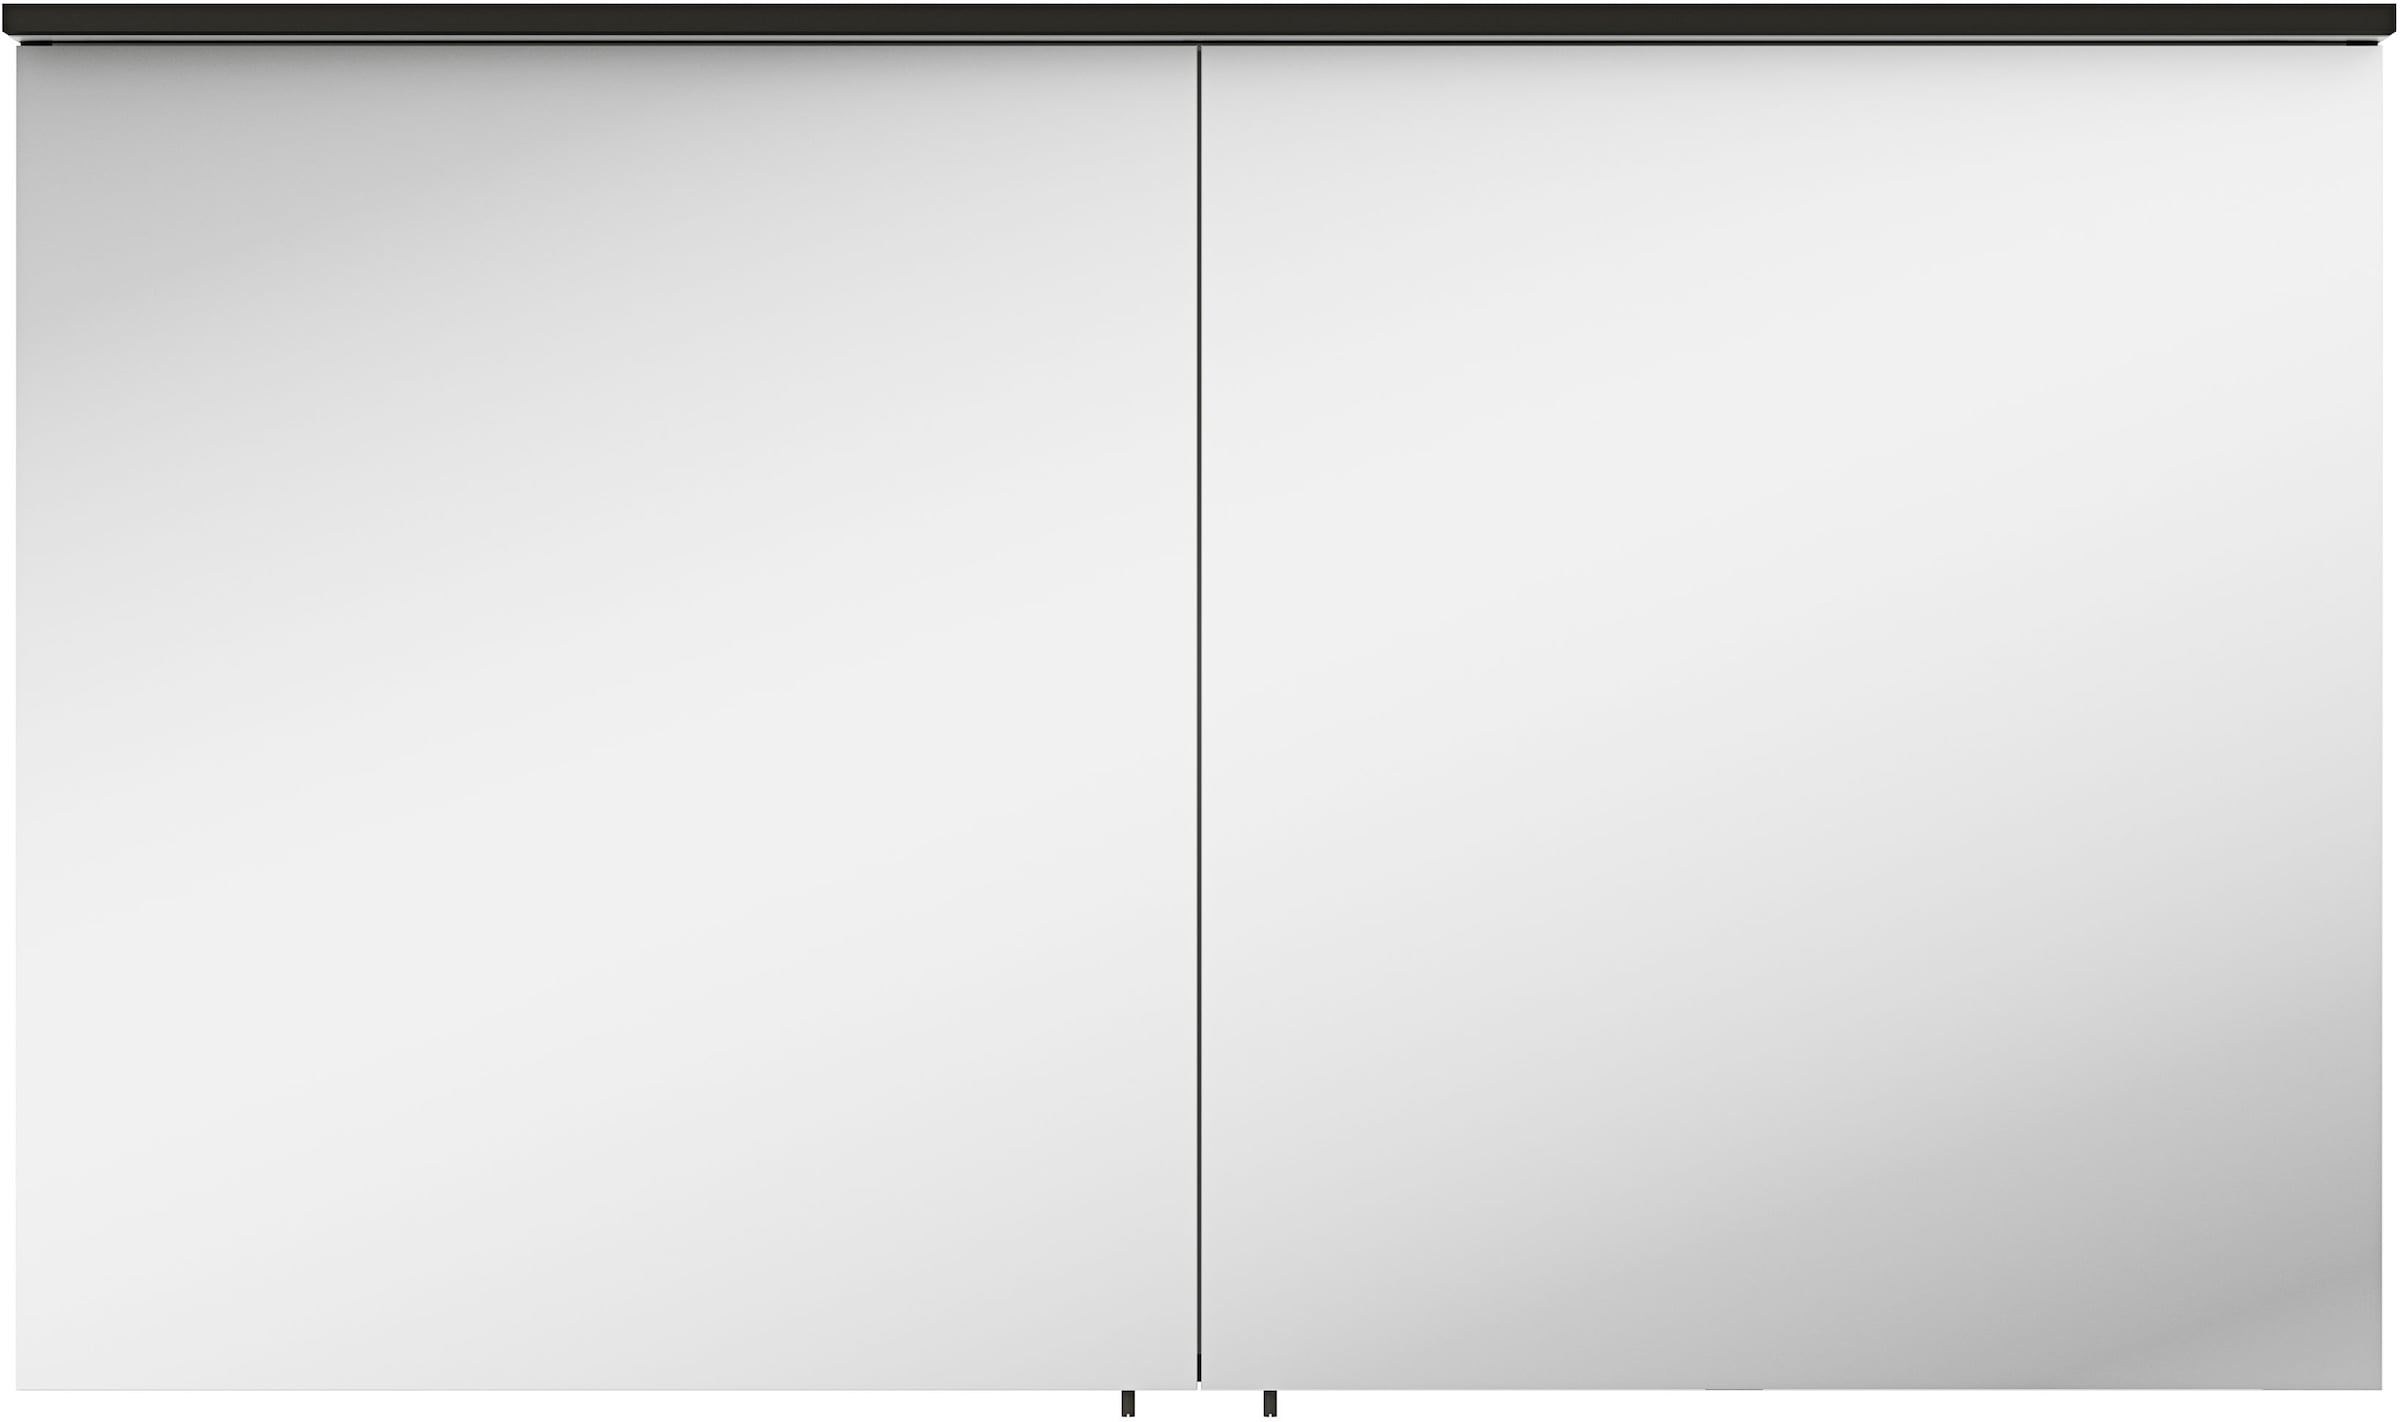 MARLIN Spiegelschrank "3510clarus", 120 cm breit, Soft-Close-Funktion, inkl. Beleuchtung, vormontiert